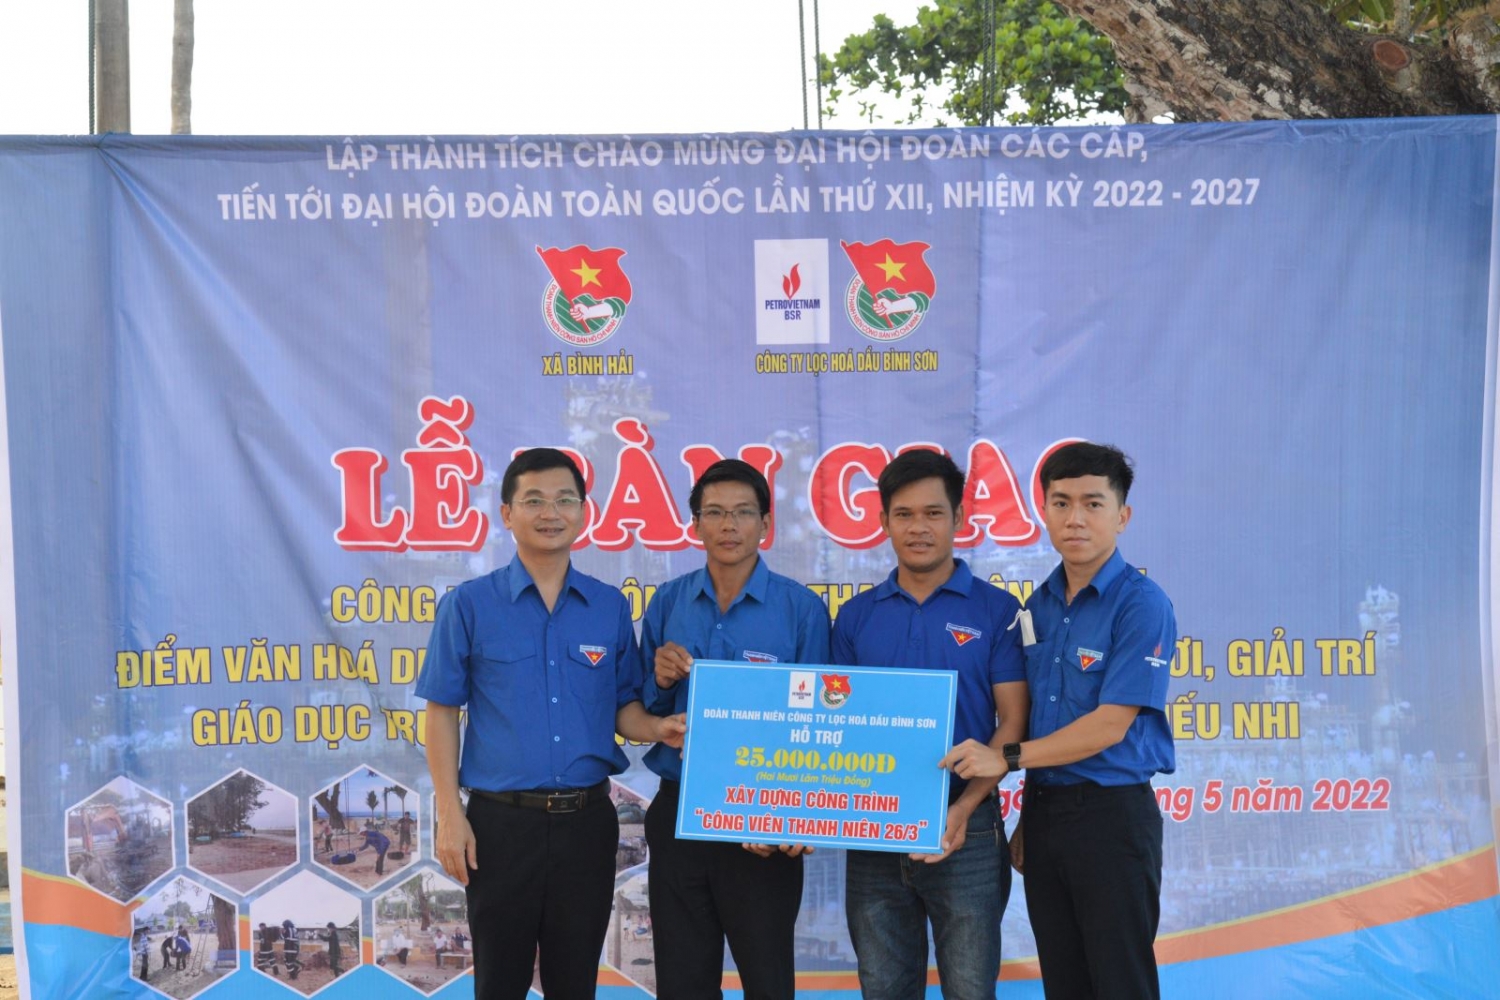 Đoàn Thanh niên BSR tài trợ công trình “Công viên Thanh niên 26/3” cho xã Bình Hải, huyện Bình Sơn, tỉnh Quảng Ngãi”